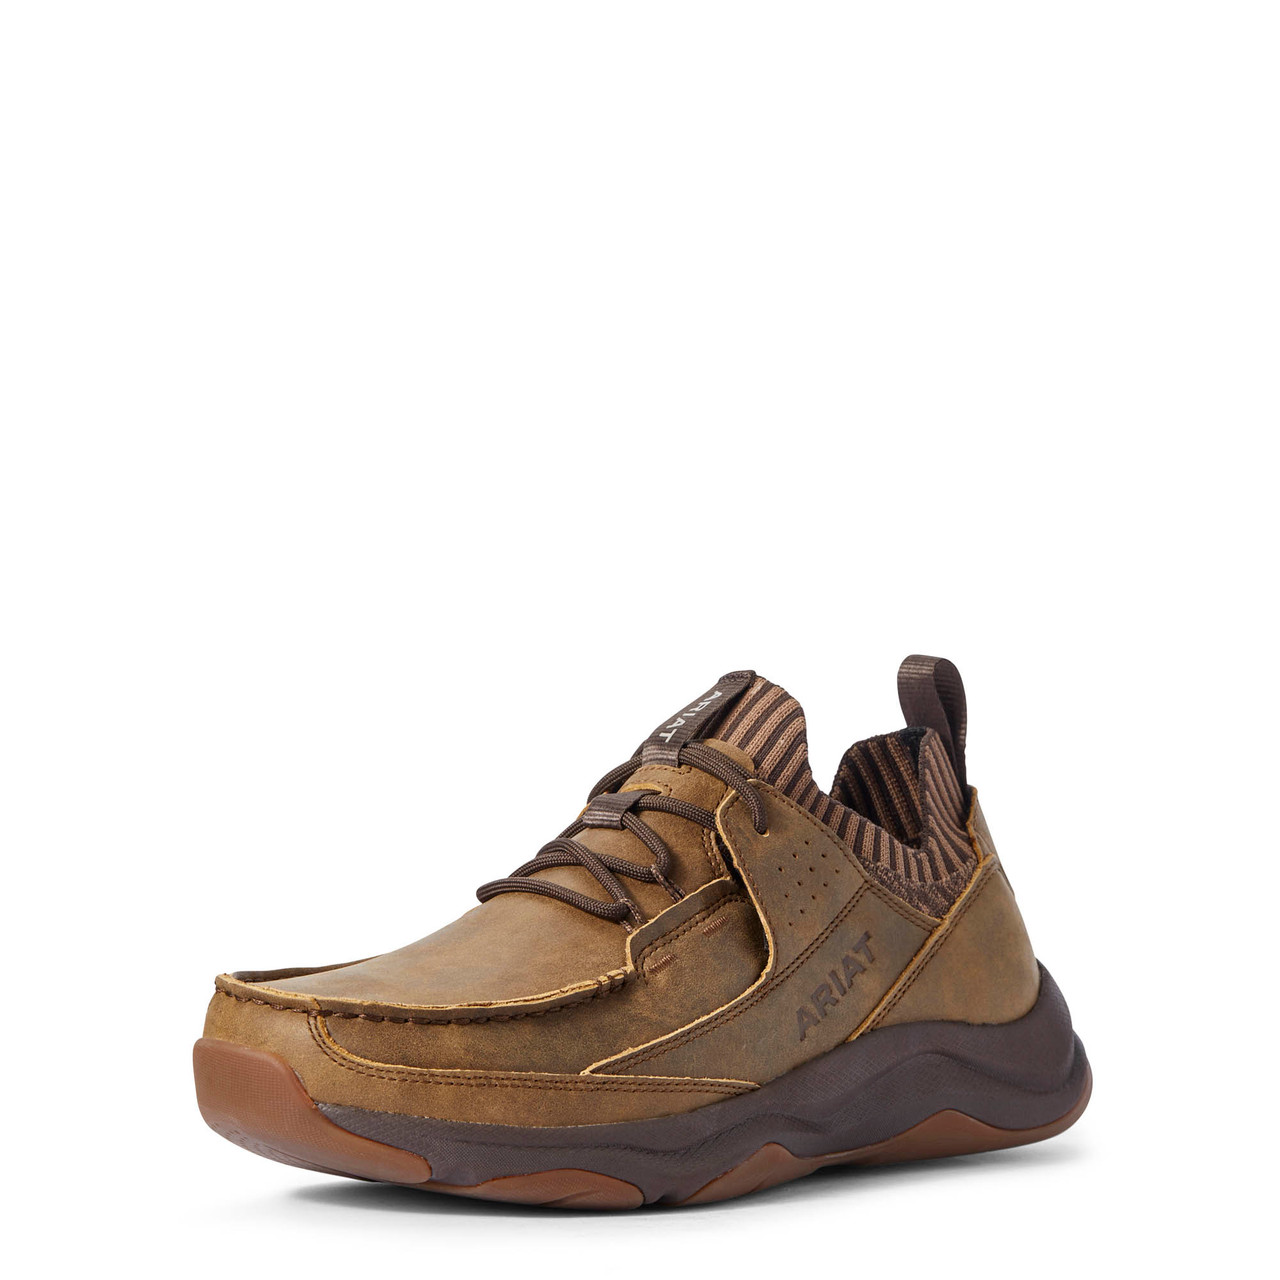 Men's Boots - - Wicker - Western Wear